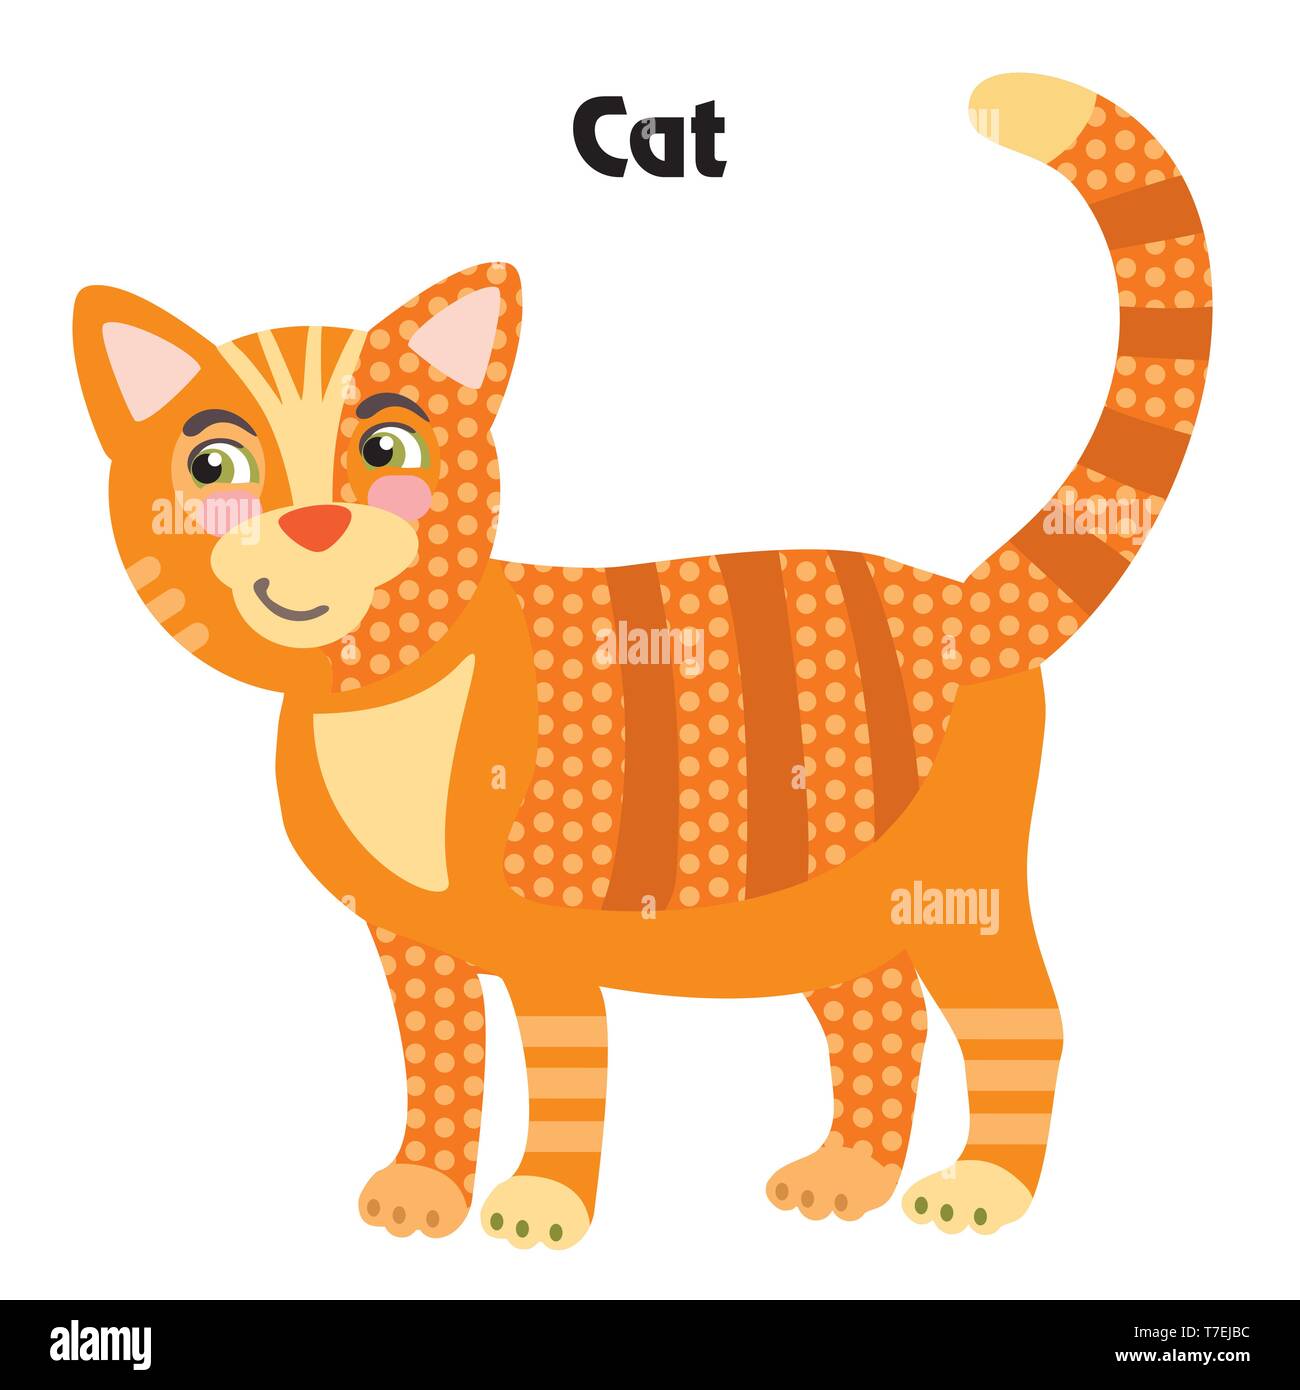 Bunt dekorativ Umrisse cute Ginger cat steht im Profil. Bauernhof Tiere und Vögel Vektor cartoon Flachbild Abbildung in verschiedenen Farben isoliert Stock Vektor